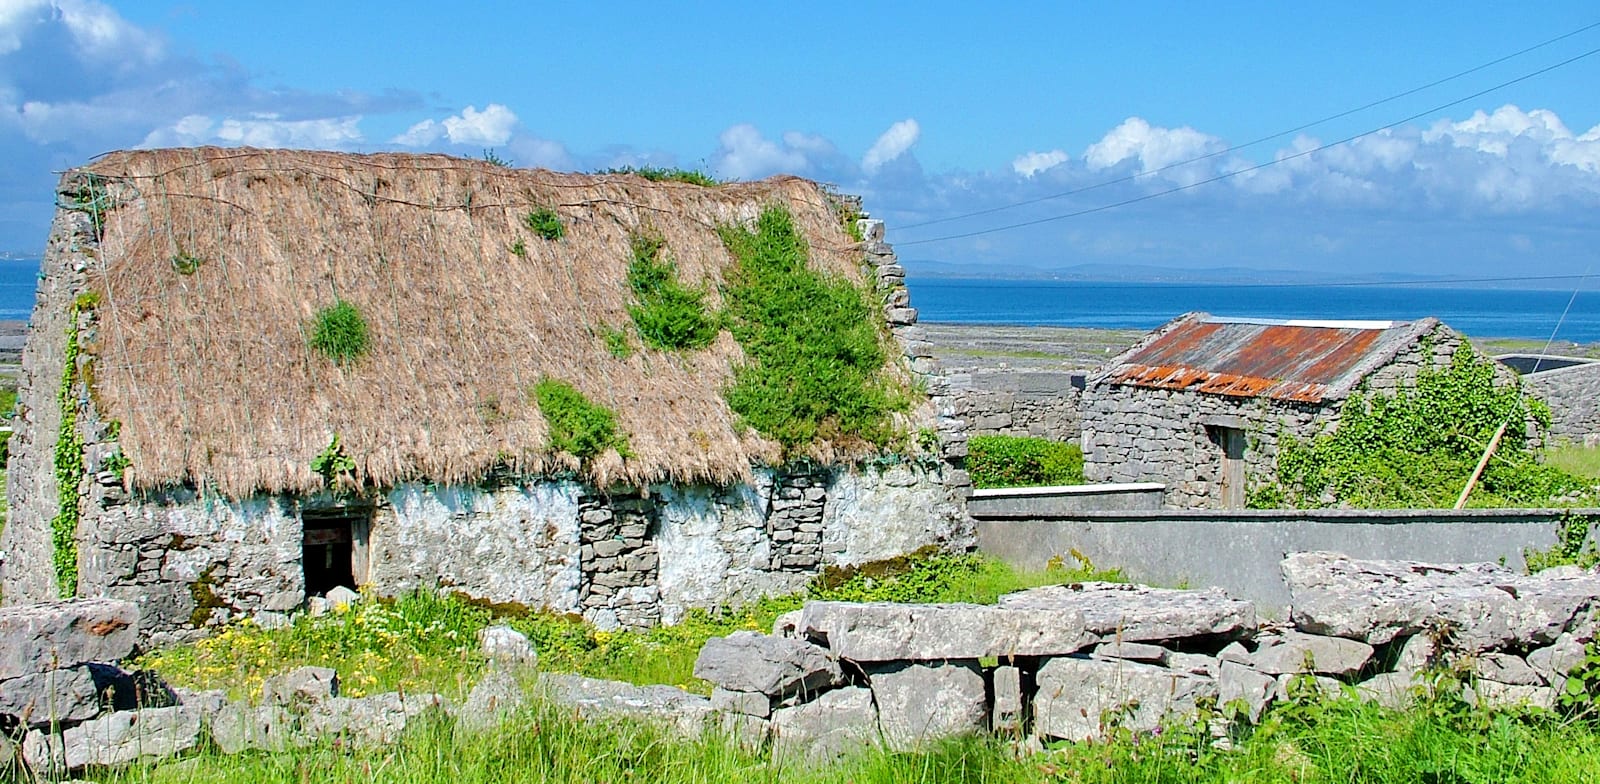 האי איניס מור. למה ממשלת אירלנד מציעה 84 אלף אירו כדי שתעברו לשם? / צילום: Shutterstock, Bob Hilscher